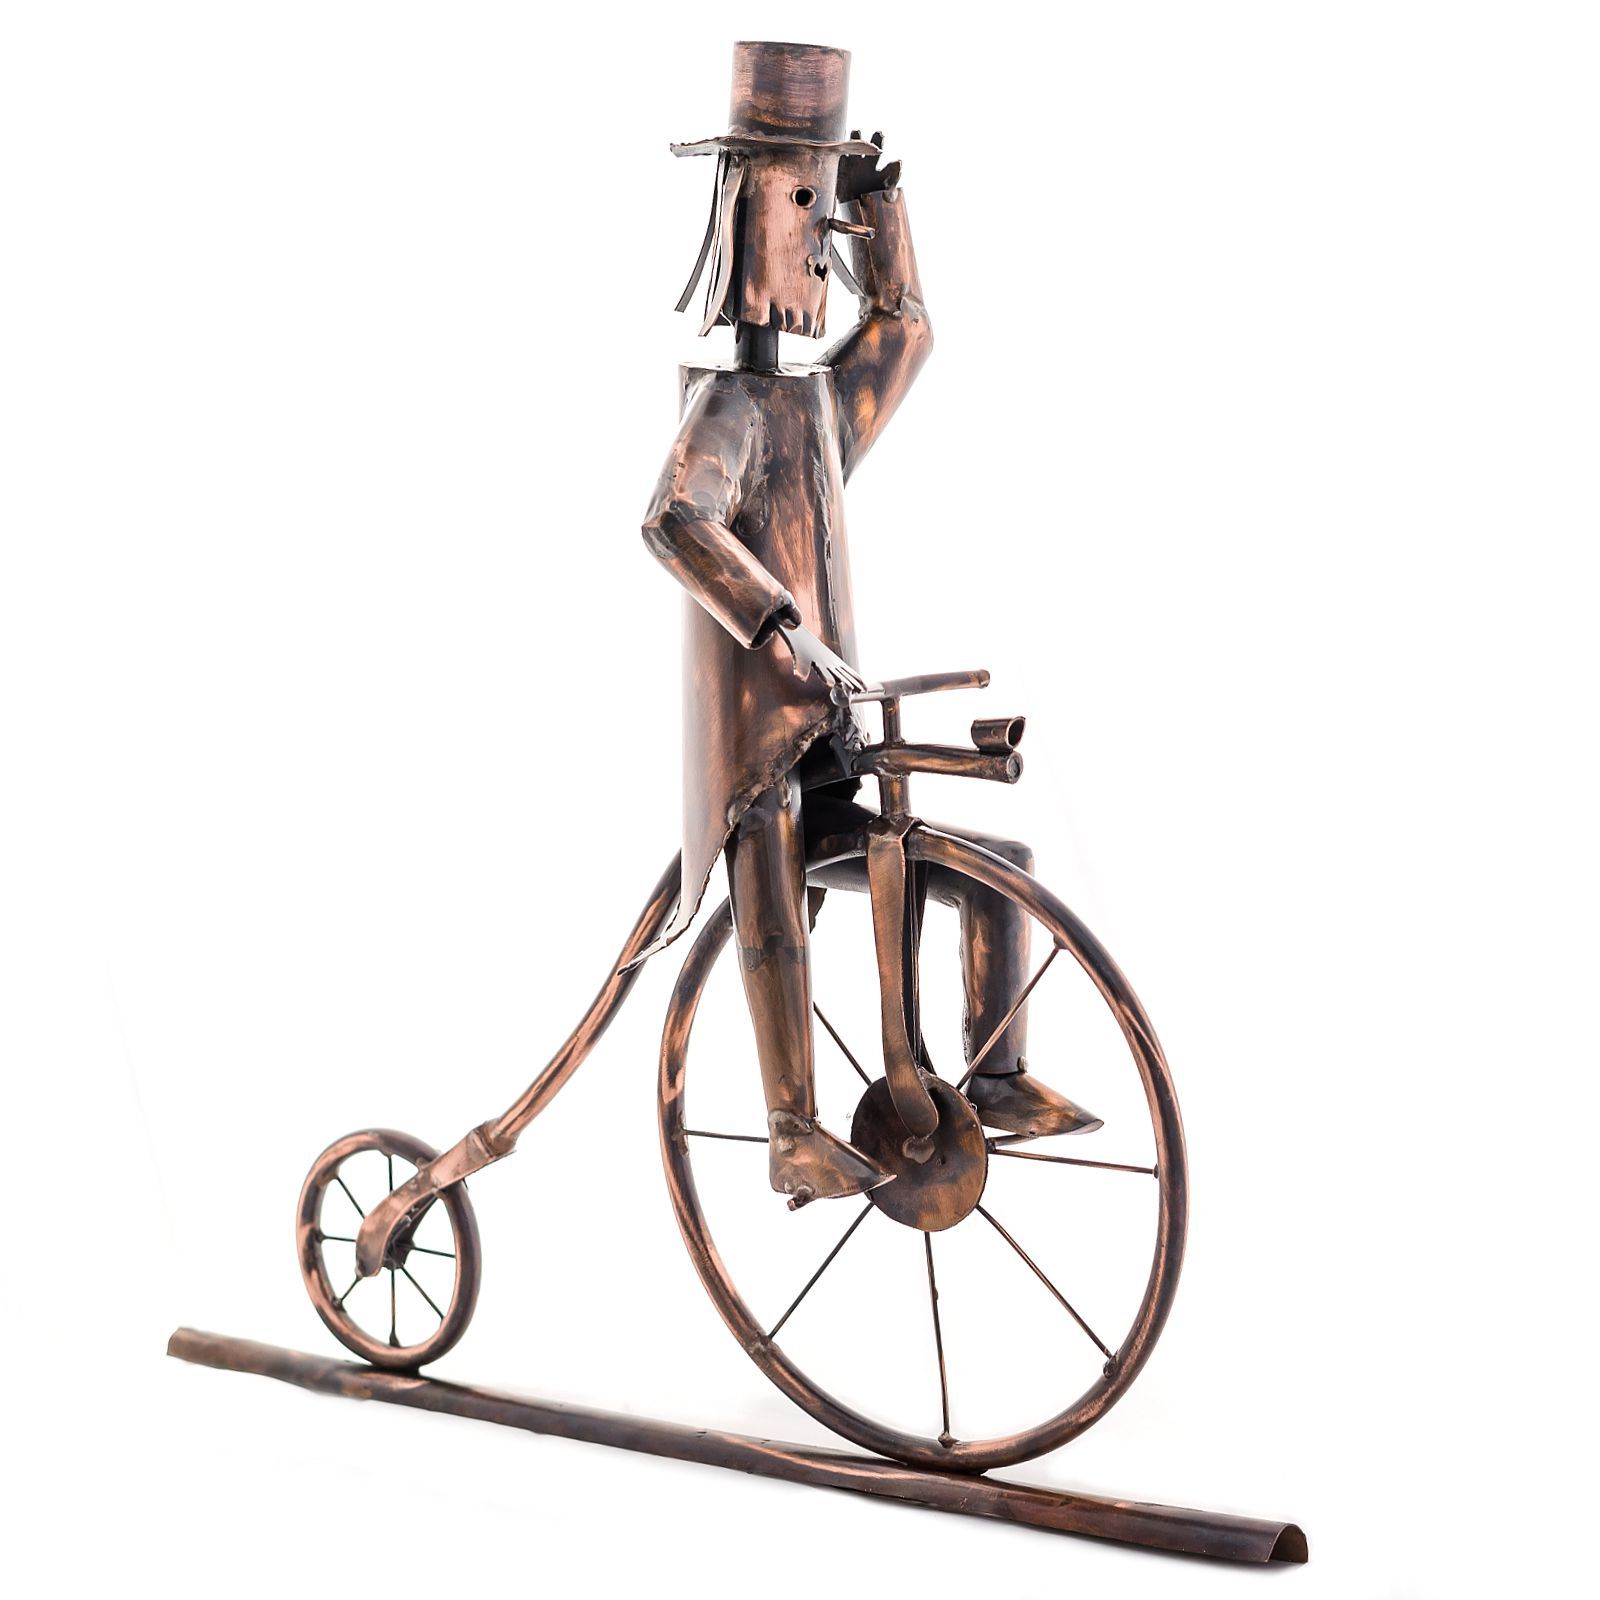 Kupferfigur für die Dachrinne, Hochradfahrer, historisches Fahrrad